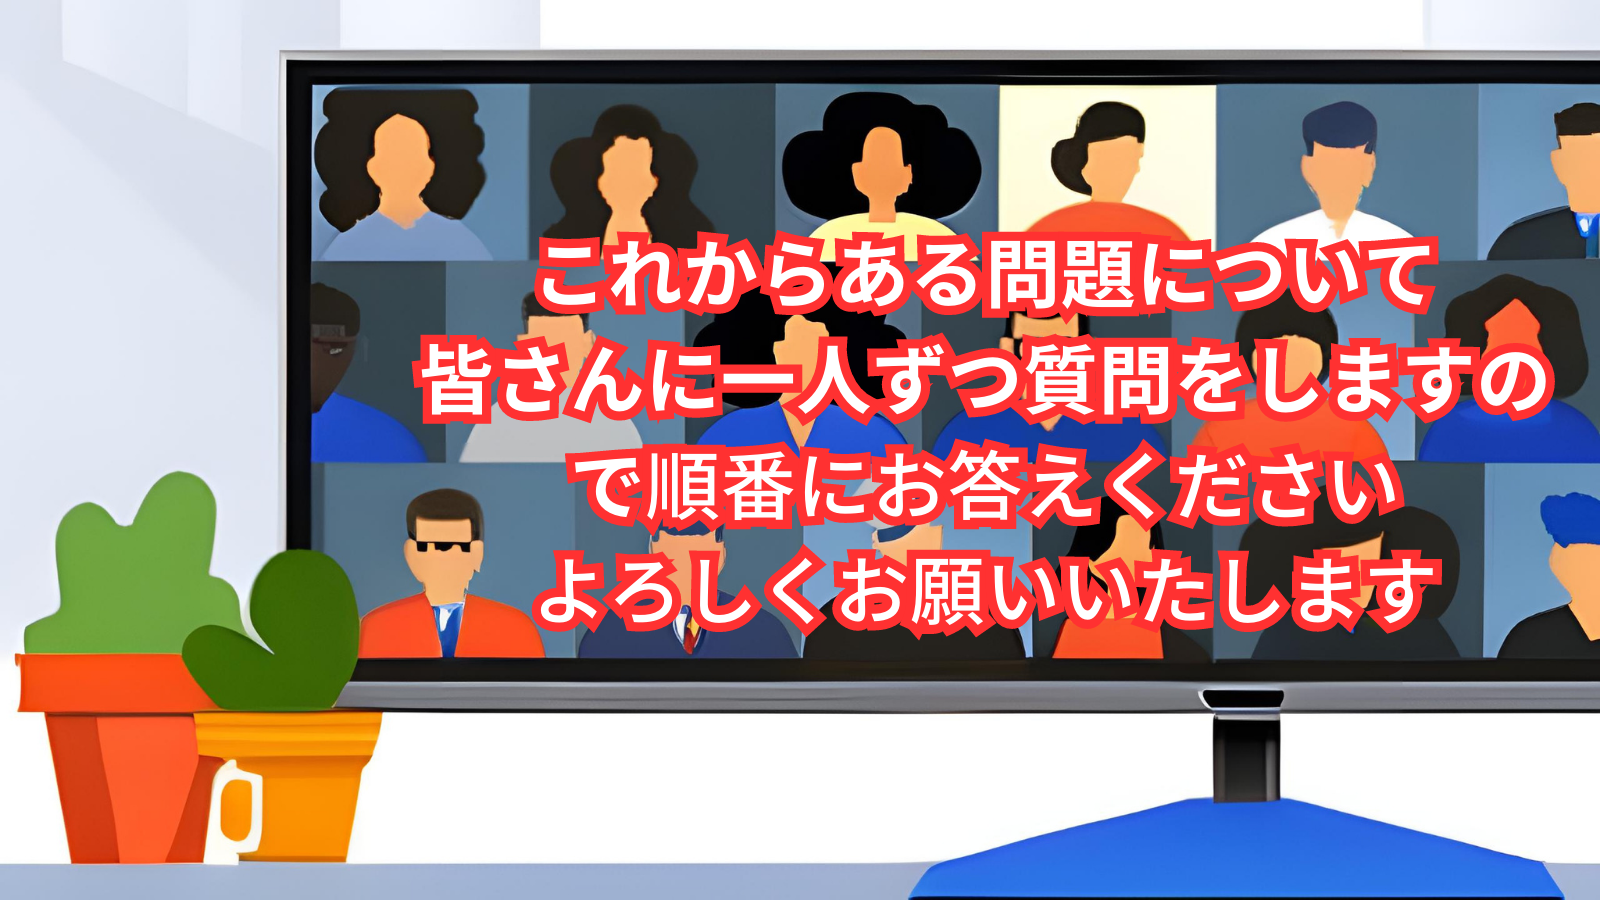 日本の動画コンテンツが今後抱える字幕の課題